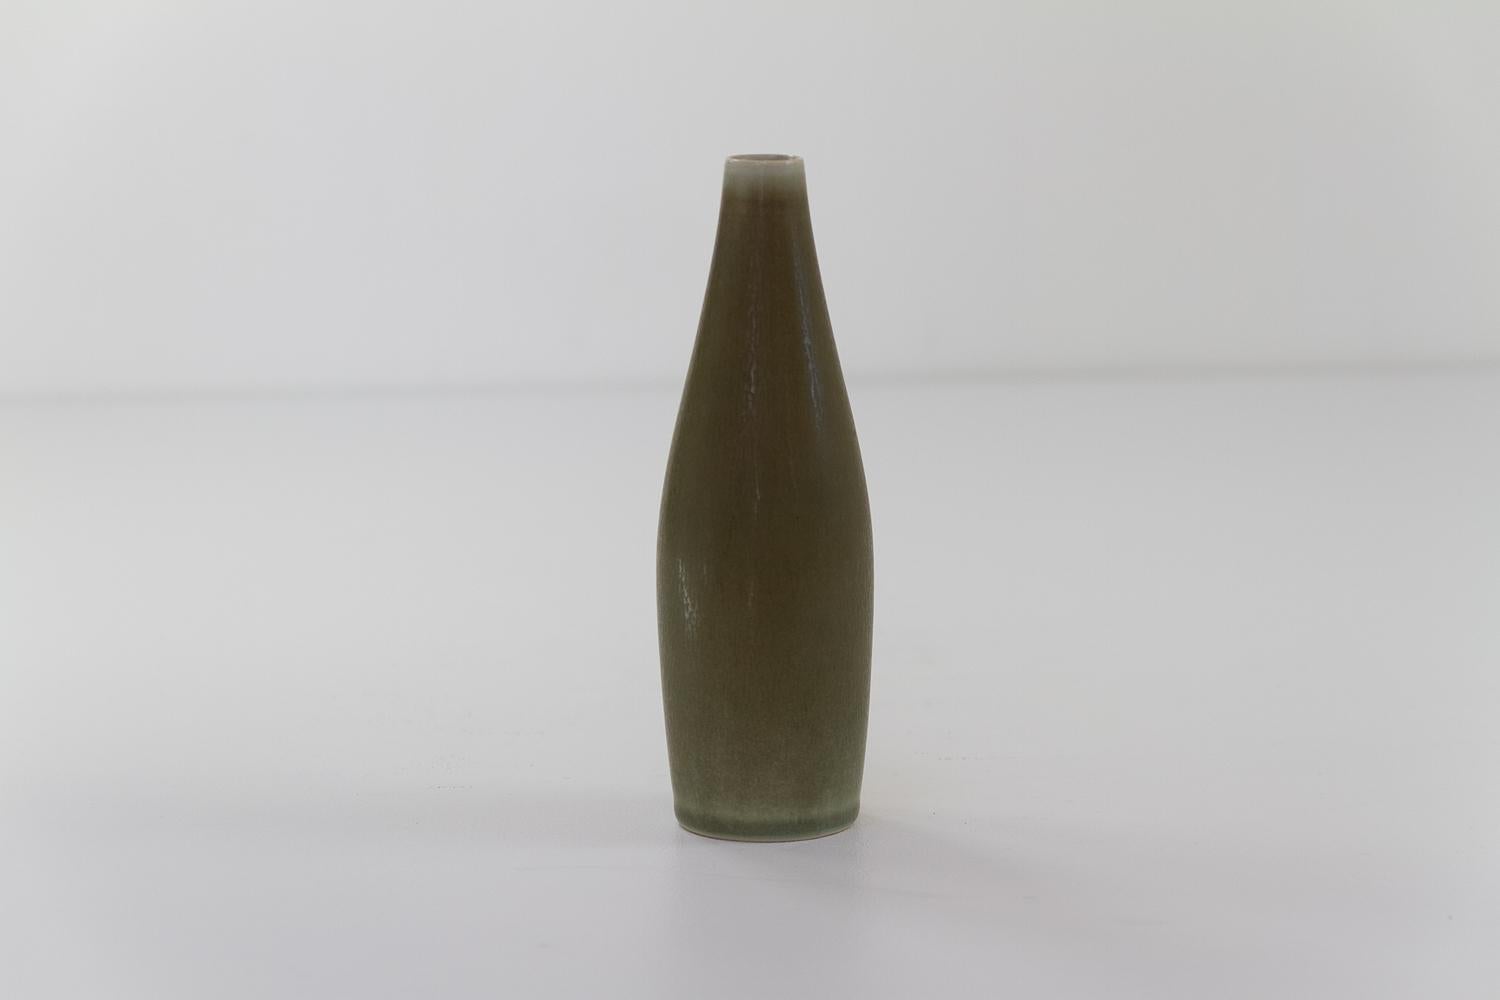 Danish Modern Ceramic Vase by Per Linnemann-Schmidt for Palshus, 1960s. For Sale 1